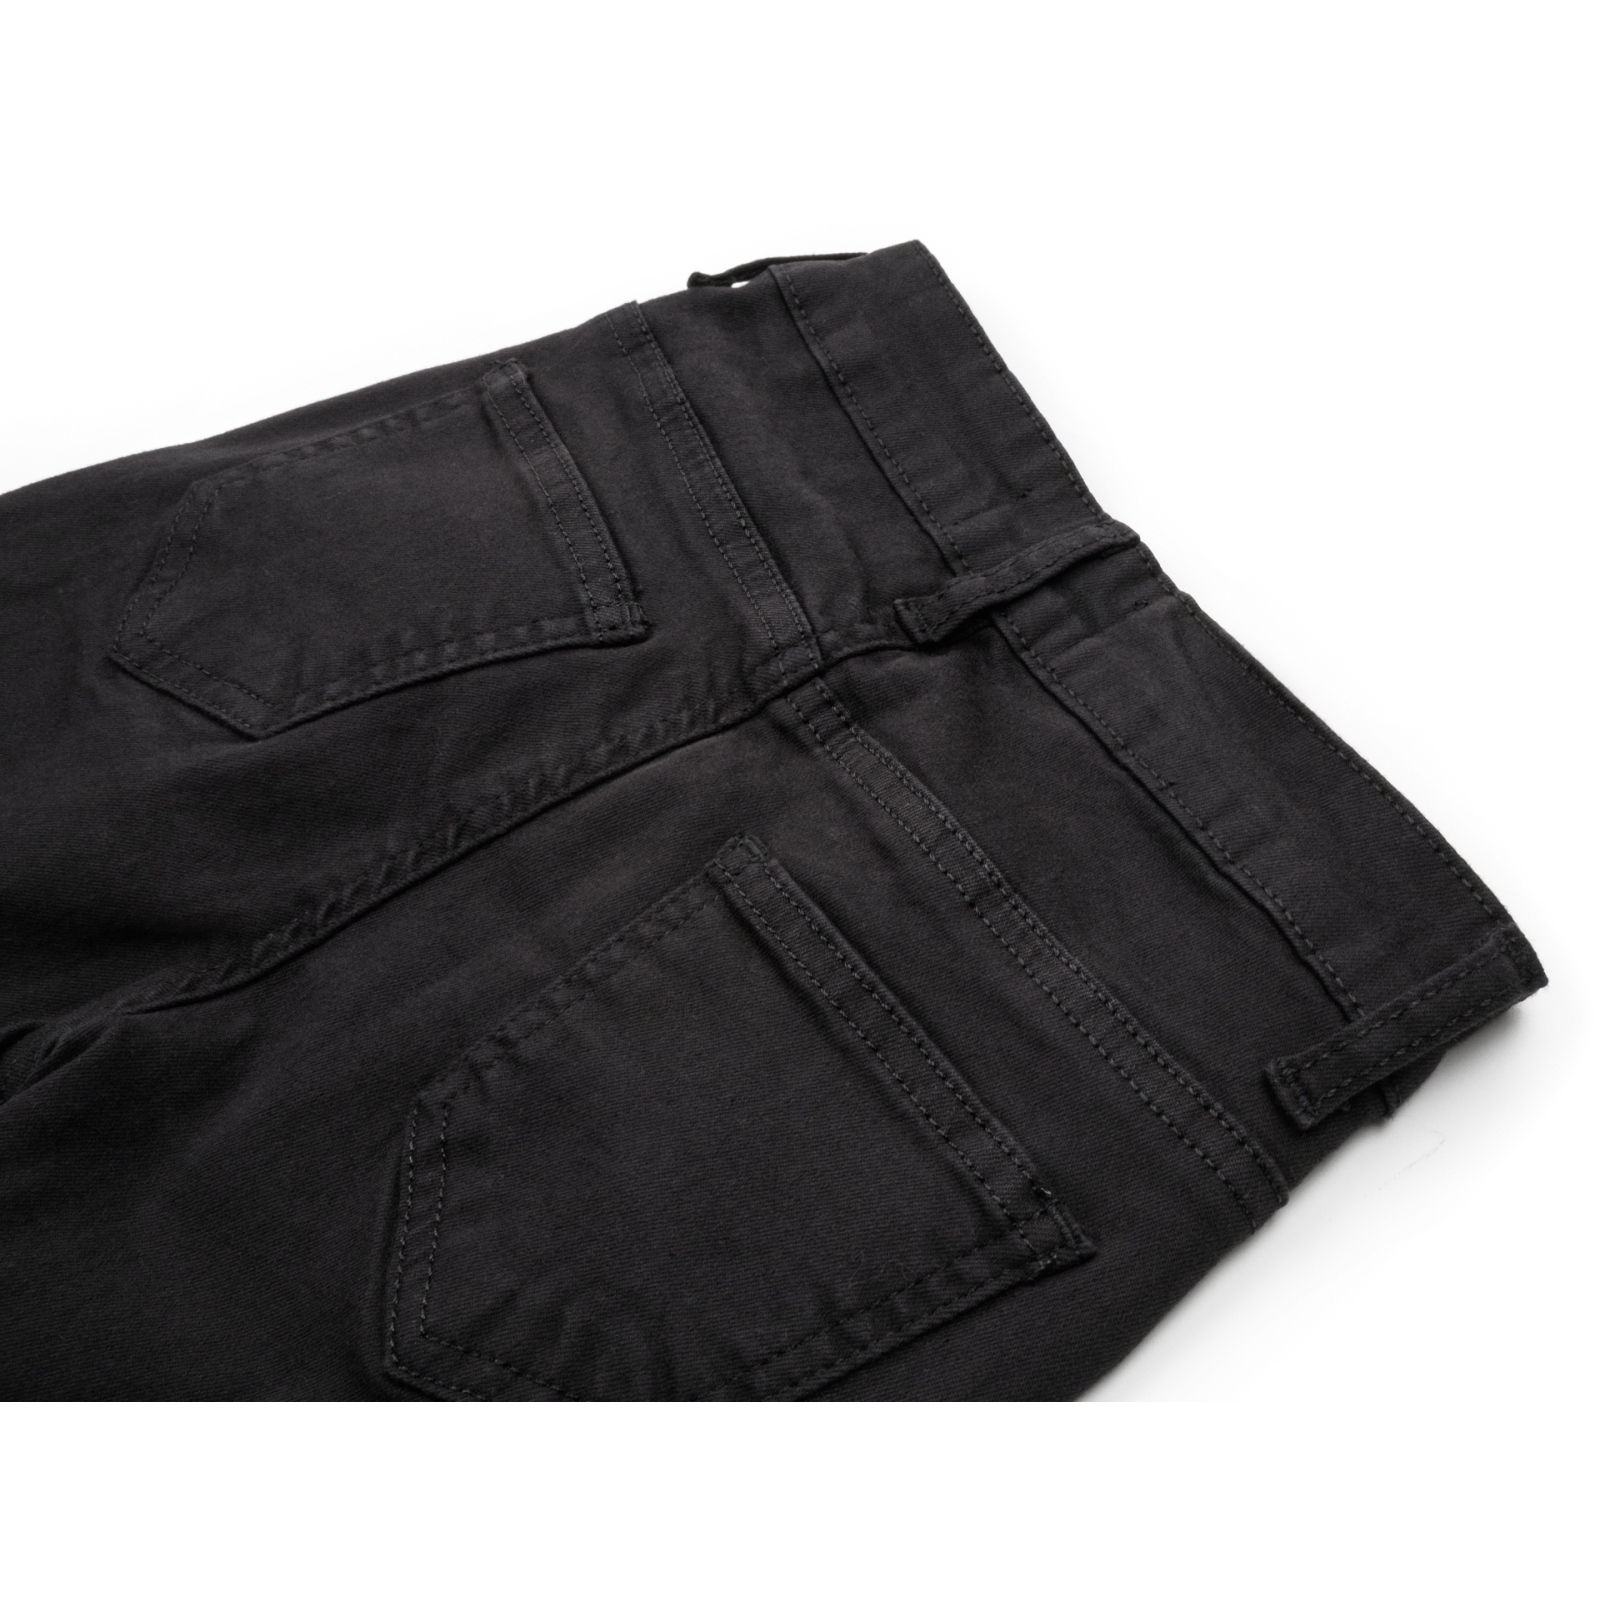 Штаны детские Breeze джинсовые зауженные (13212-146G-black) изображение 4